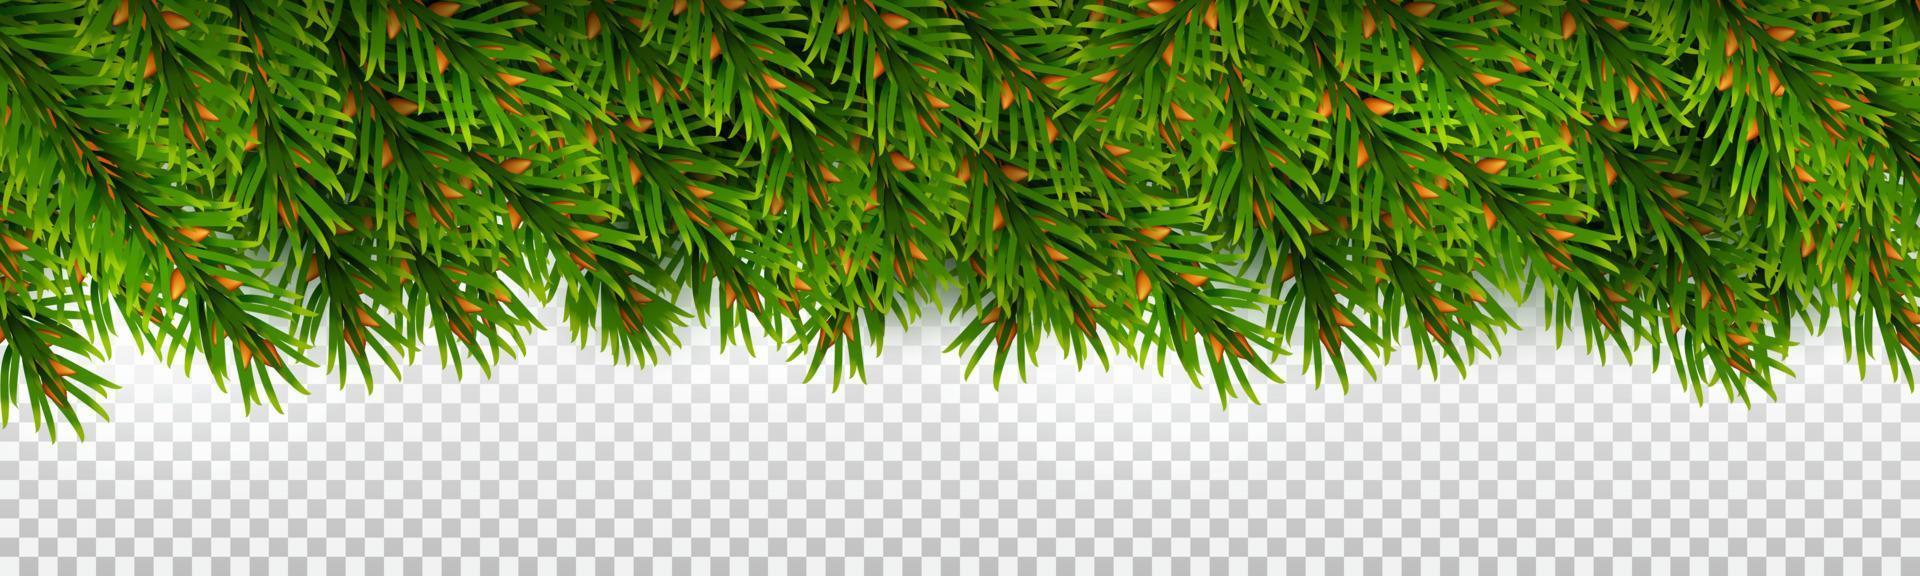 borde horizontal de ramas de abeto de hoja perenne. para decoraciones navideñas y diseños de tarjetas de felicitación. vector